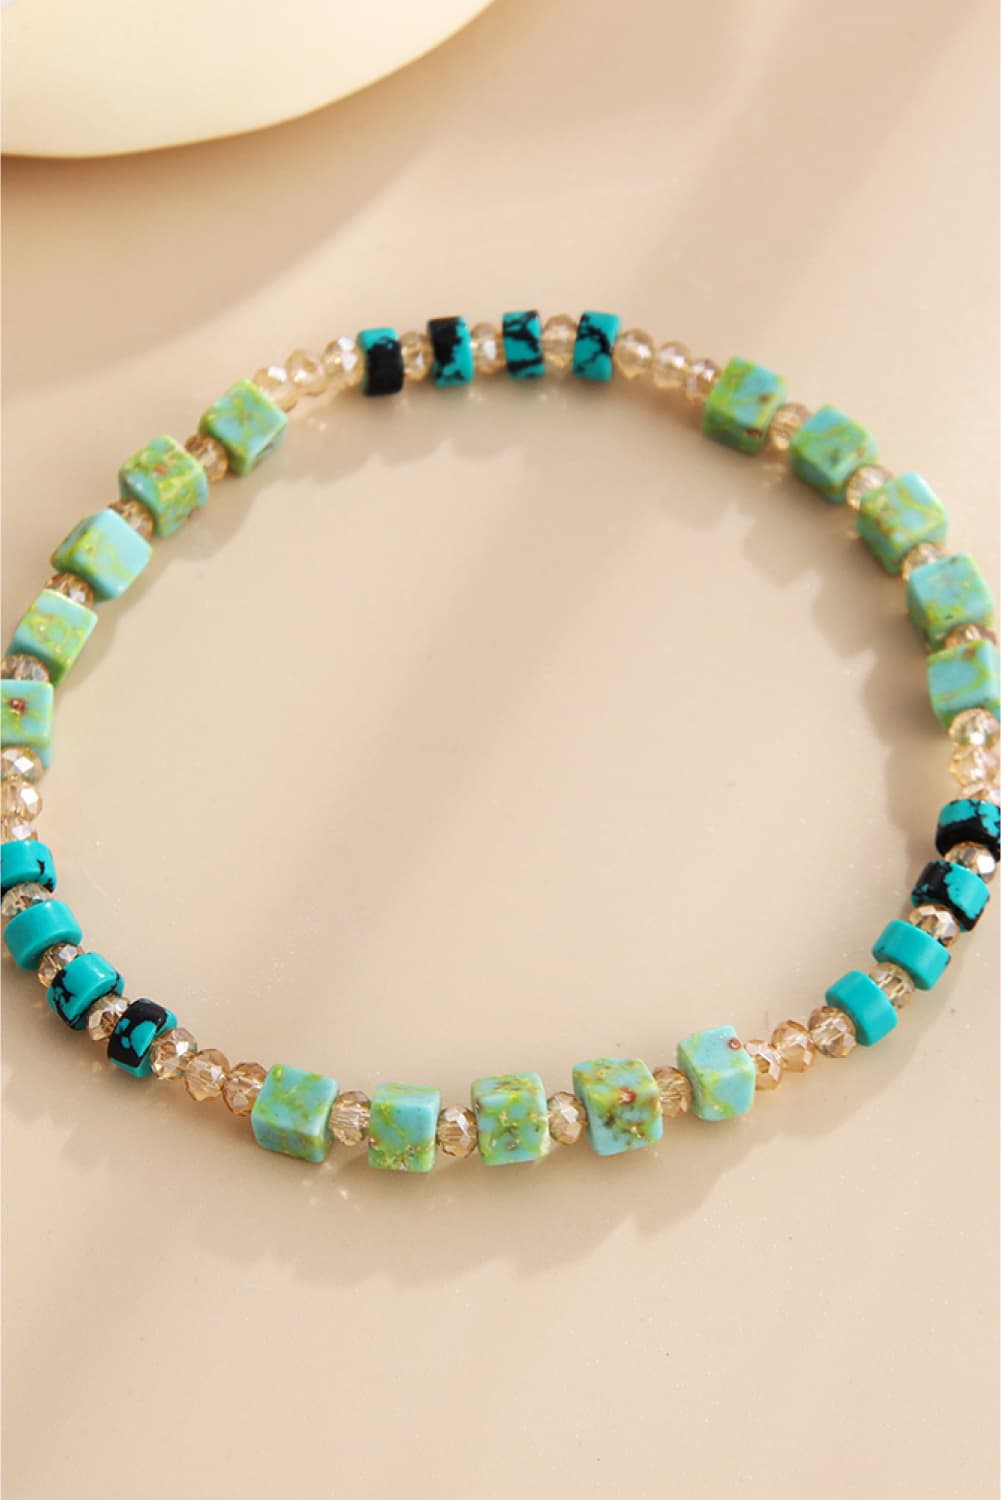 Crystal & Natural Stone Bracelet - Women’s Jewelry - Bracelets - 2 - 2024